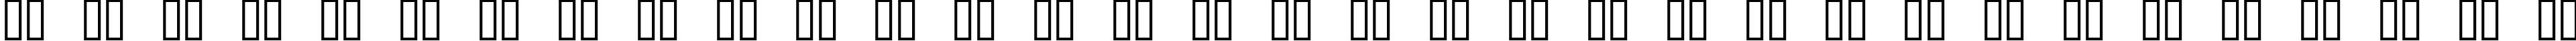 Пример написания русского алфавита шрифтом Playdough